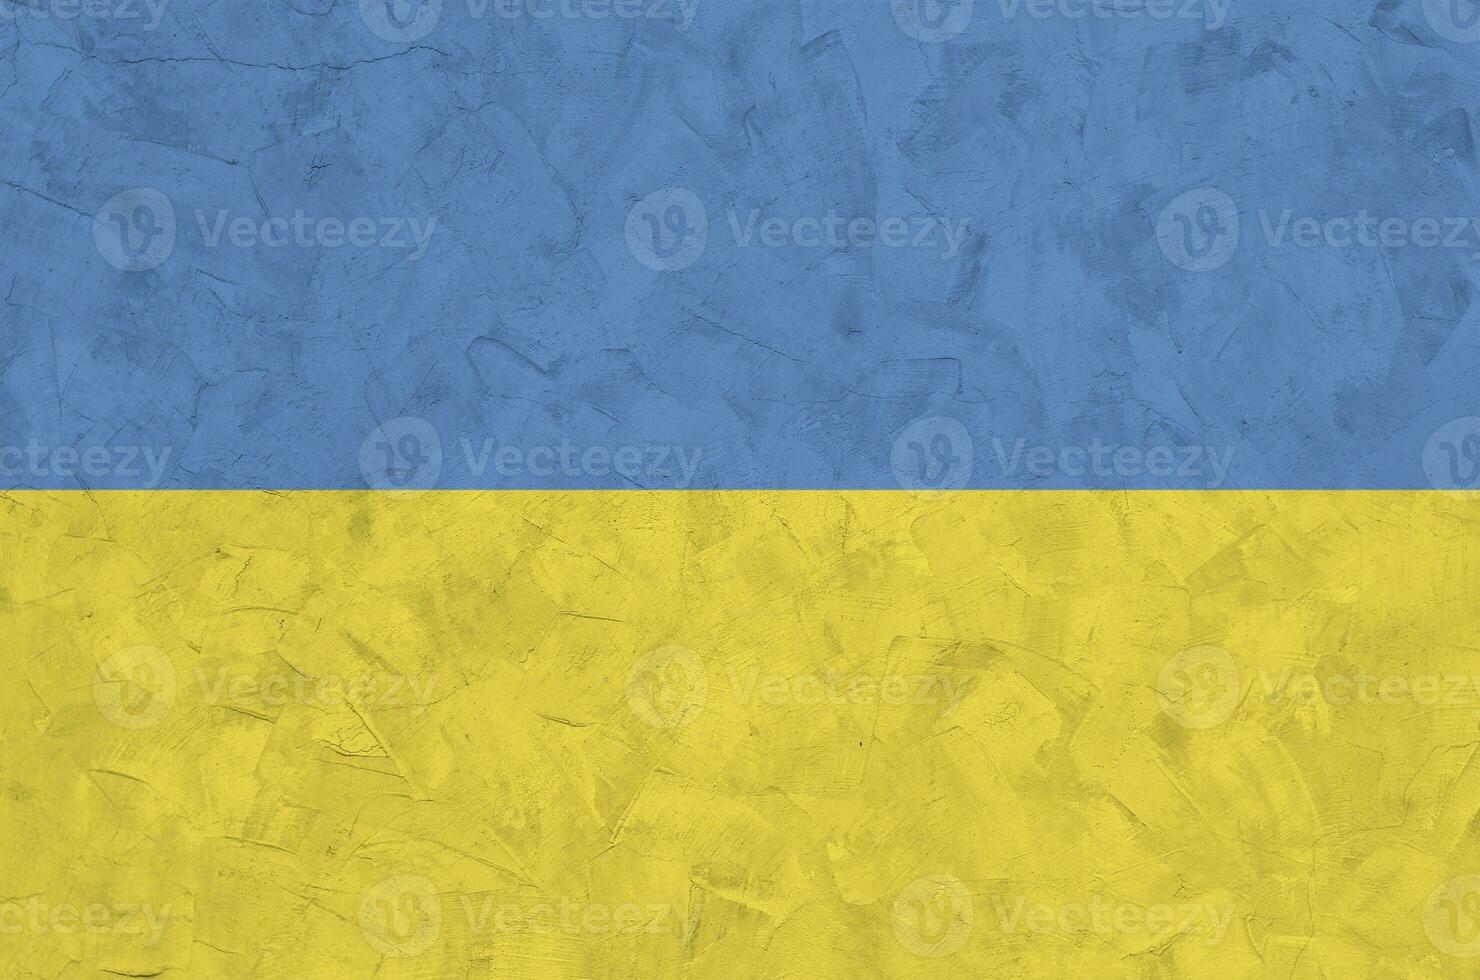 Ukraine Flagge abgebildet im hell Farbe Farben auf alt Linderung Verputzen Mauer. texturiert Banner auf Rau Hintergrund foto